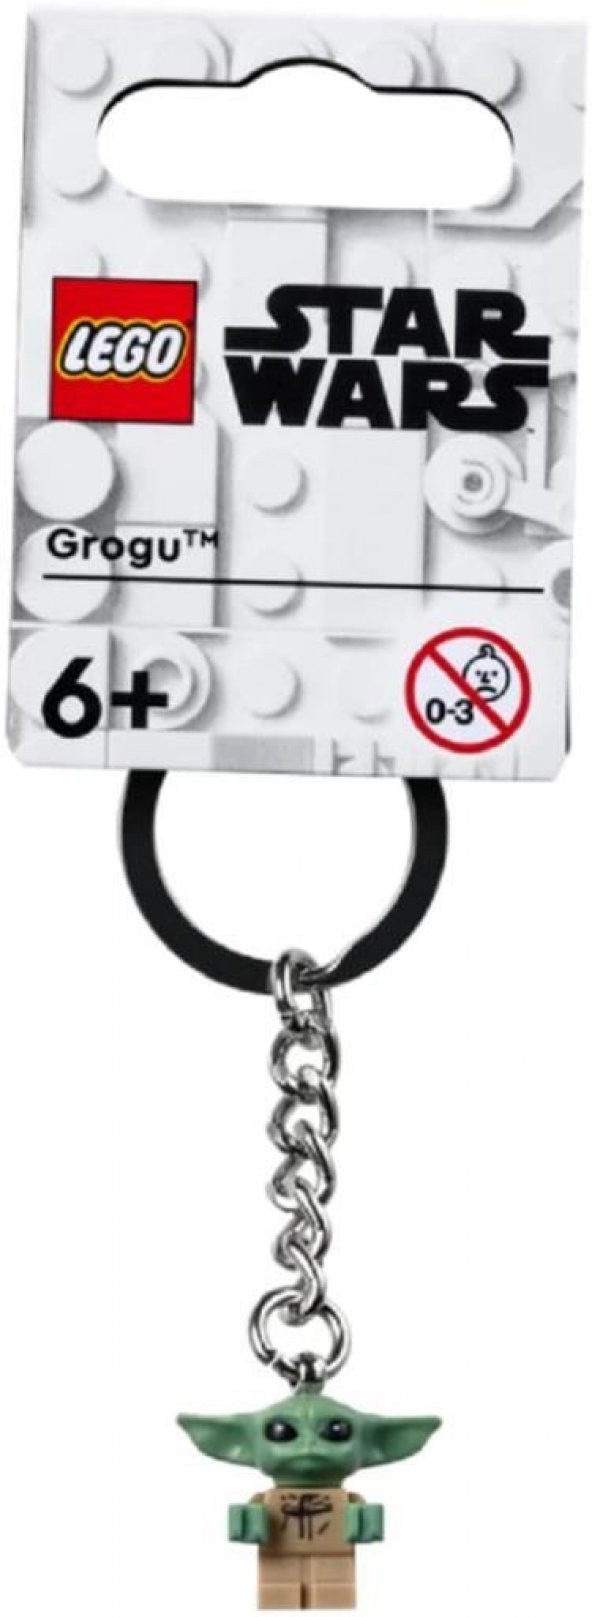 LEGO Star Wars 854187 Grogu Key Chain